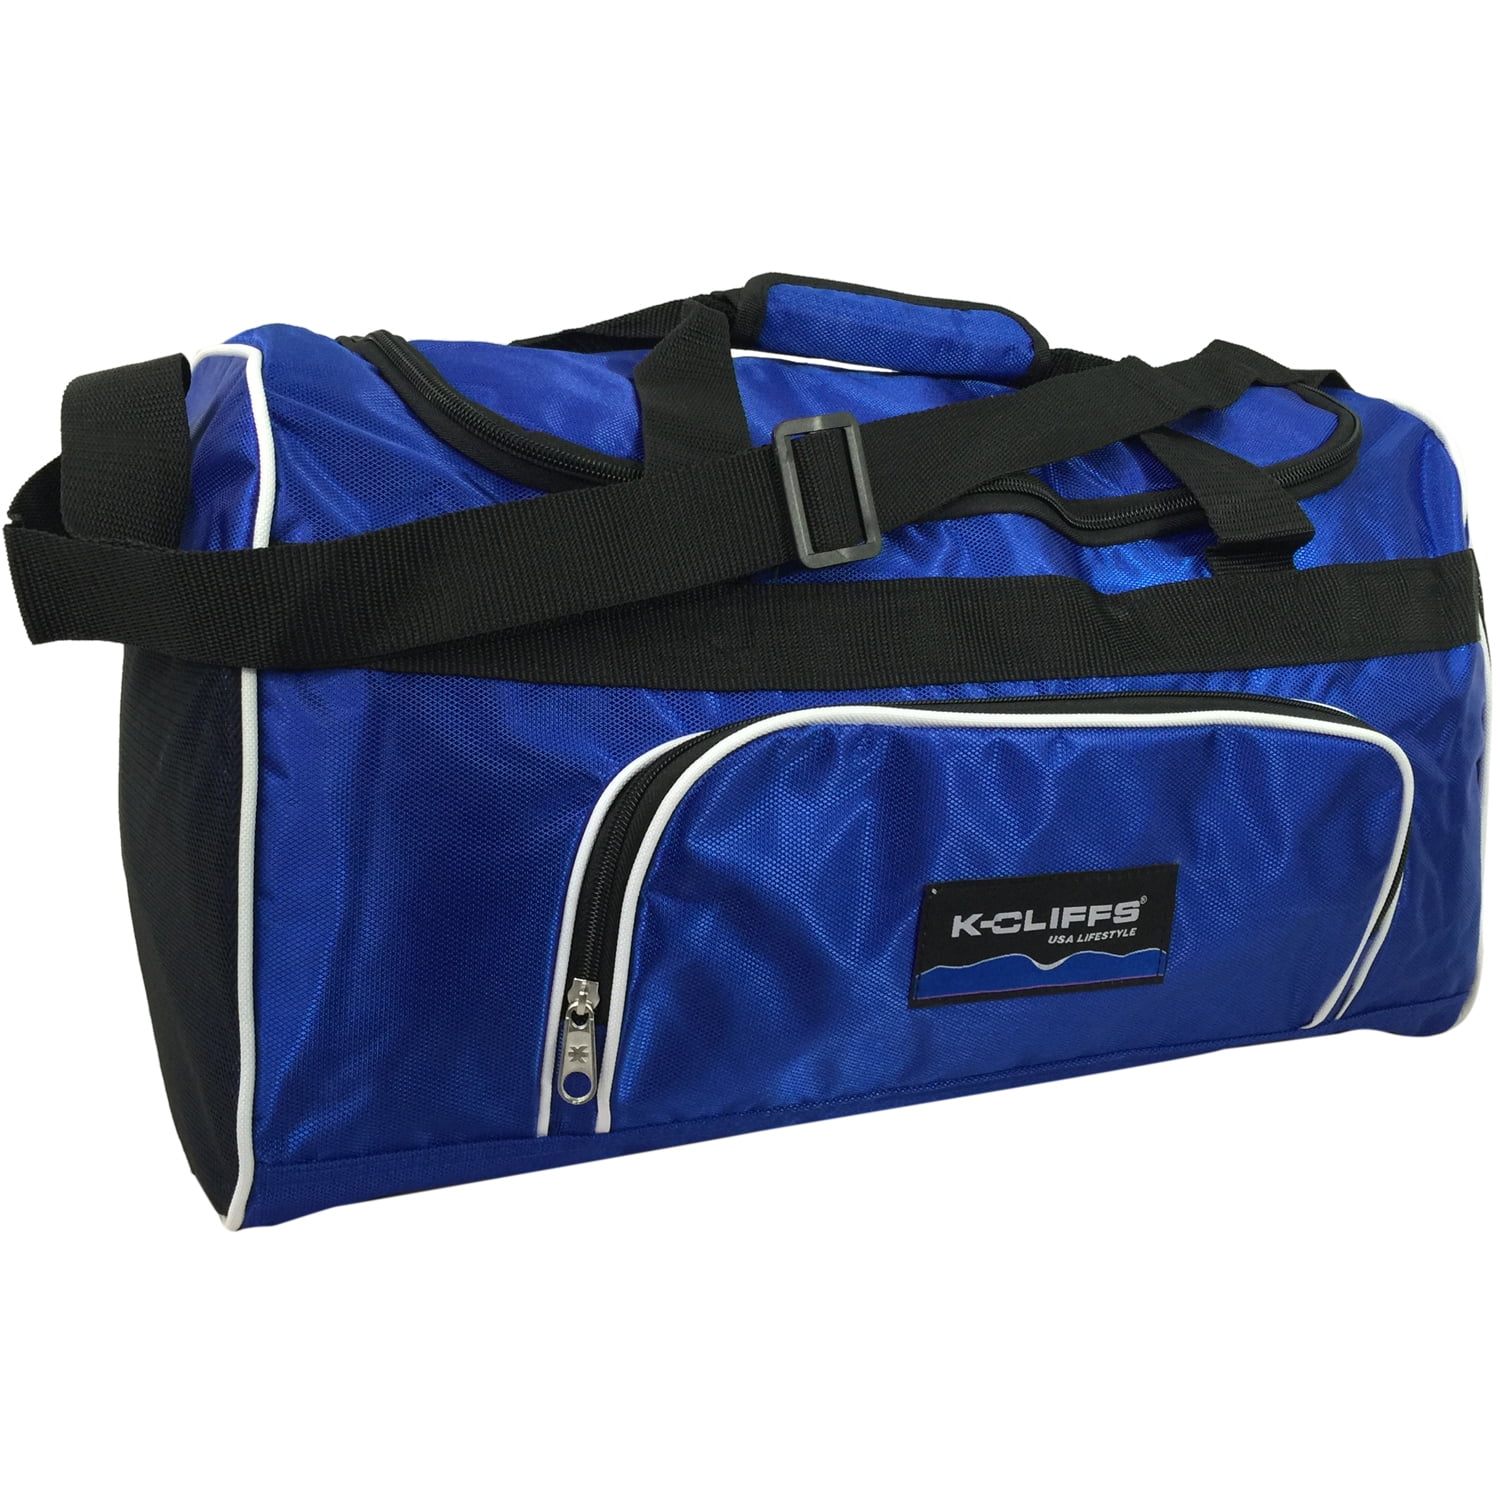 Unbranded Premium Barrel Gym Bag Fitness Sports Workout Training Plain Colour 